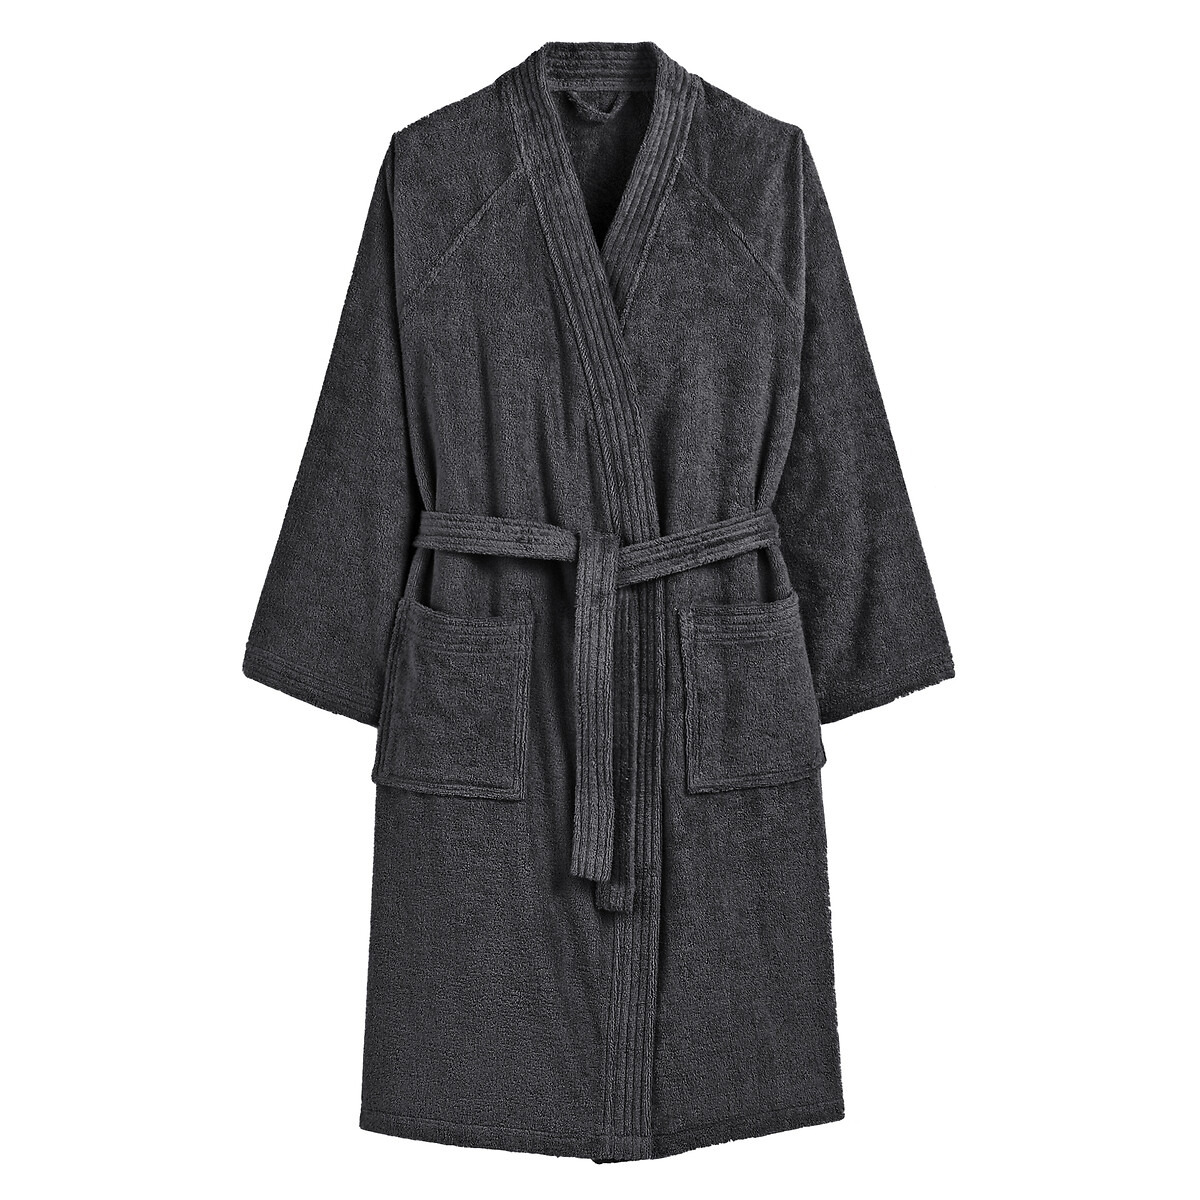 Kimono-Style 100% Cotton Towelling Bathrobe - image 1